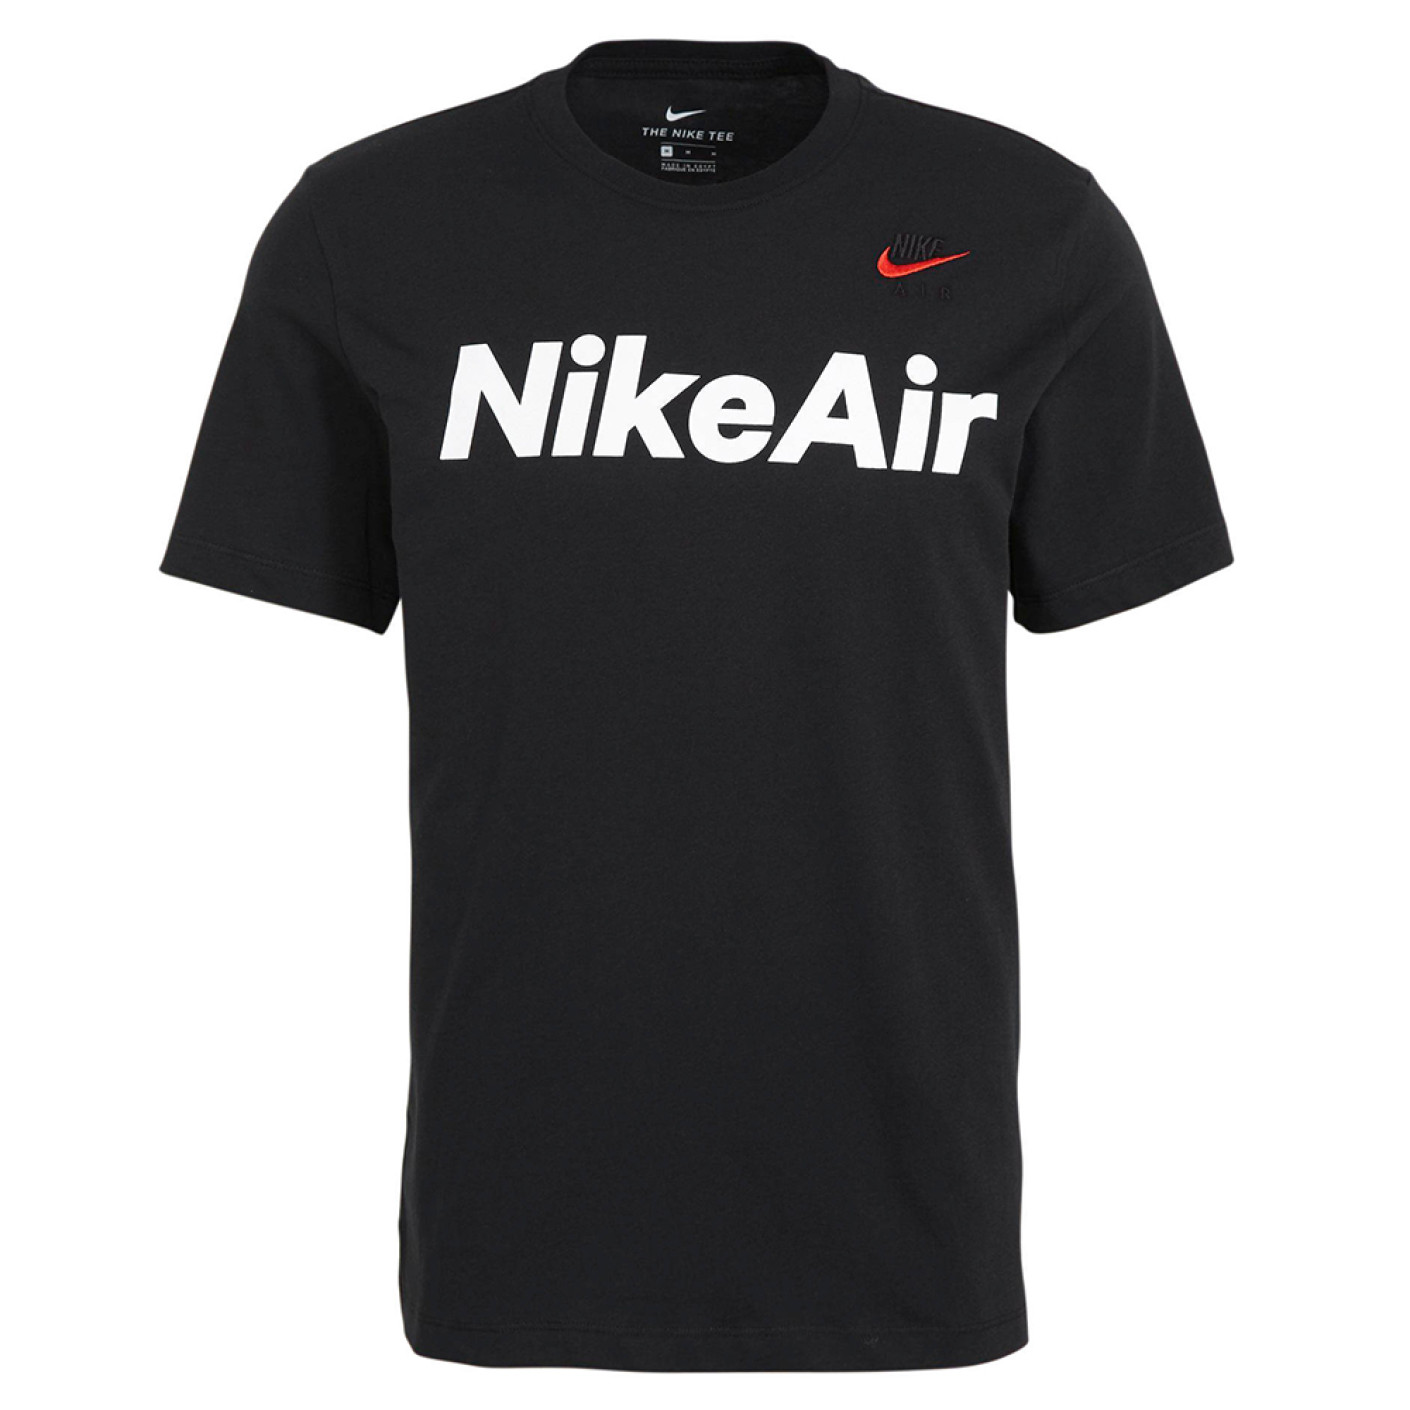 Nike Air T-Shirt Zwart Rood Wit